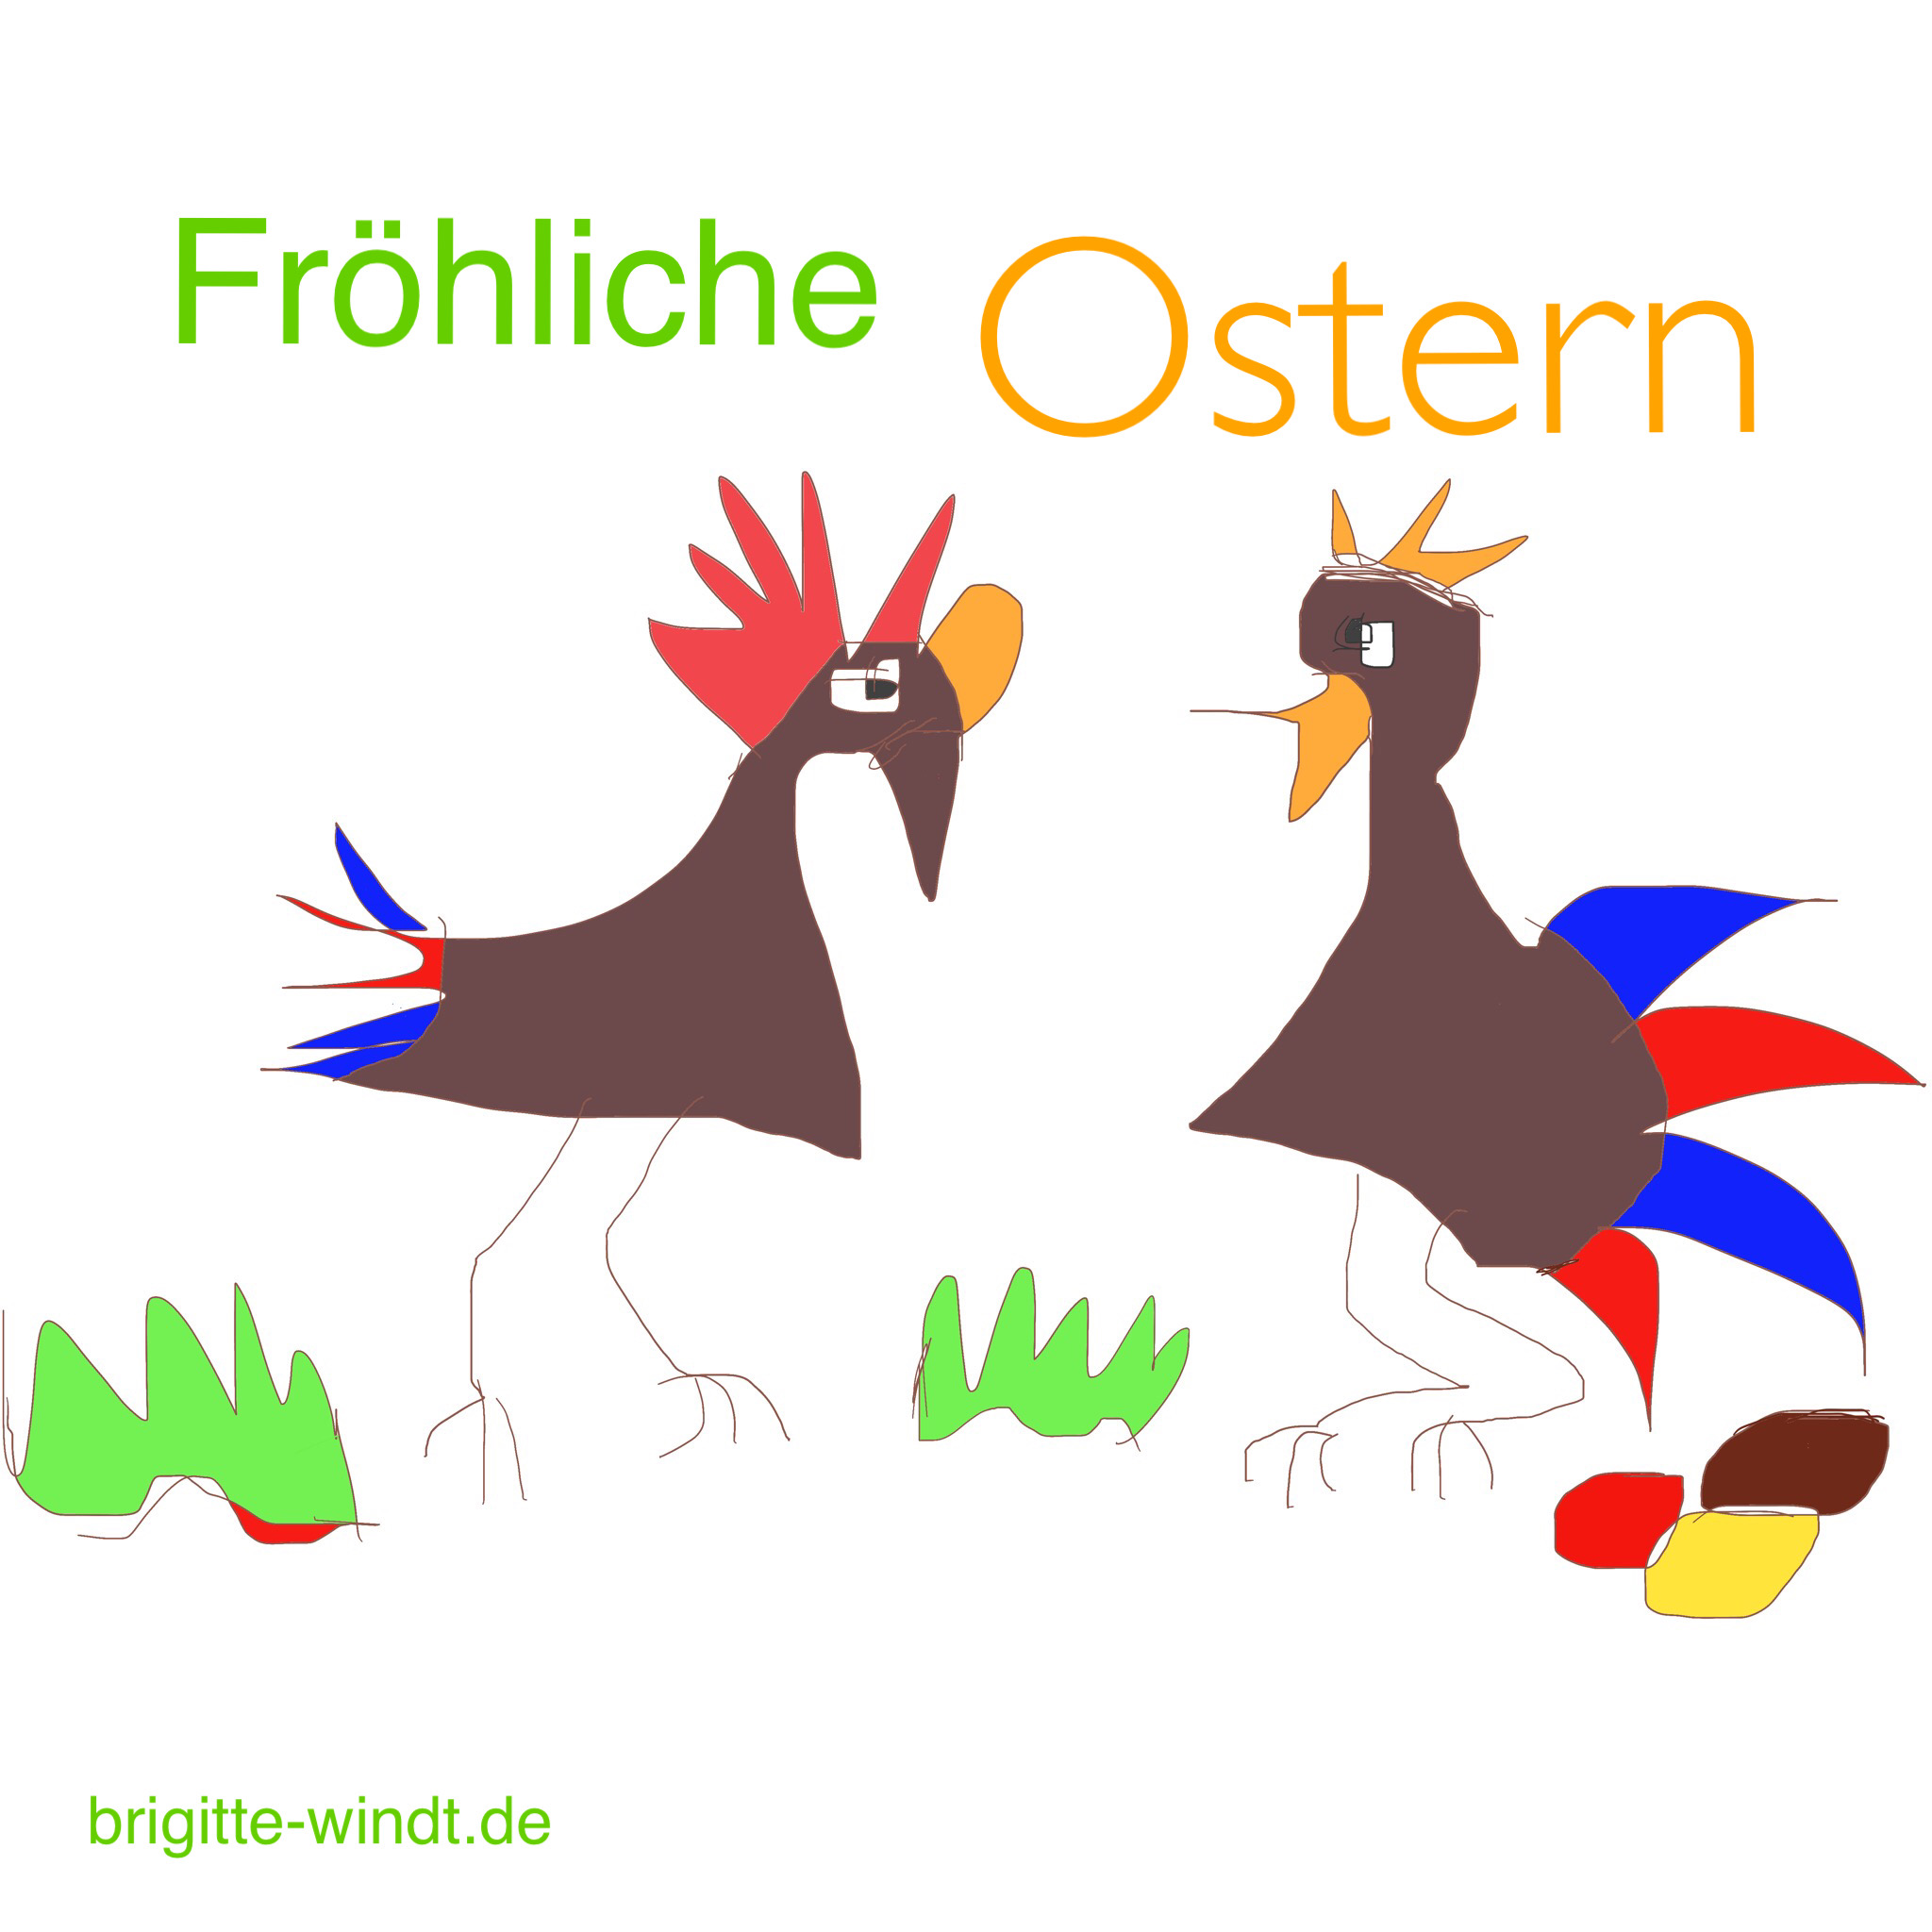 Fröhliche Ostern wünscht Brigitte Windt Berlin